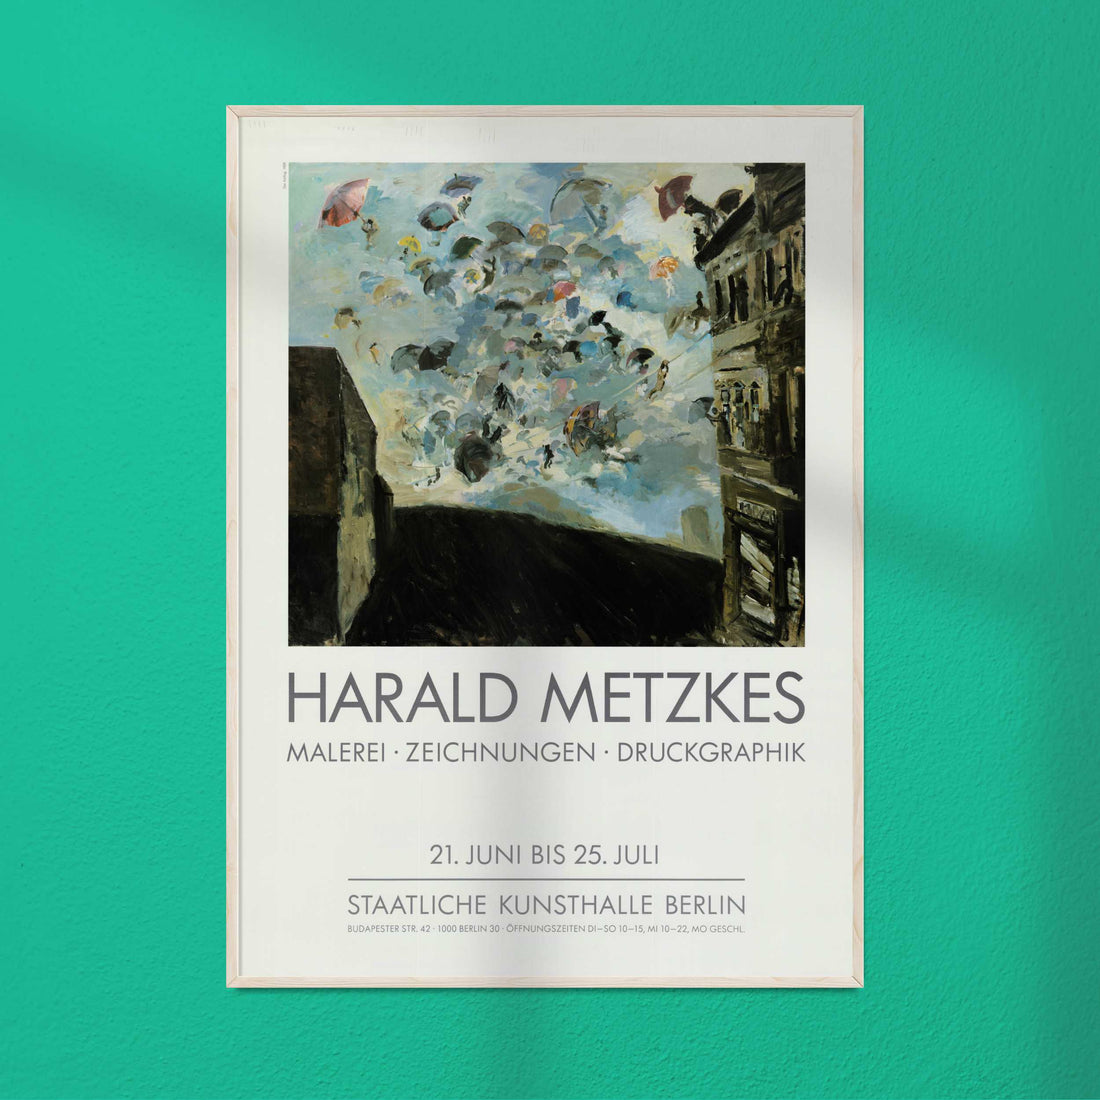 Metzkes, Harald - Malerei, Zeichnungen, Druckgraphik, Staatliche Kunsthalle Berlin, 1990